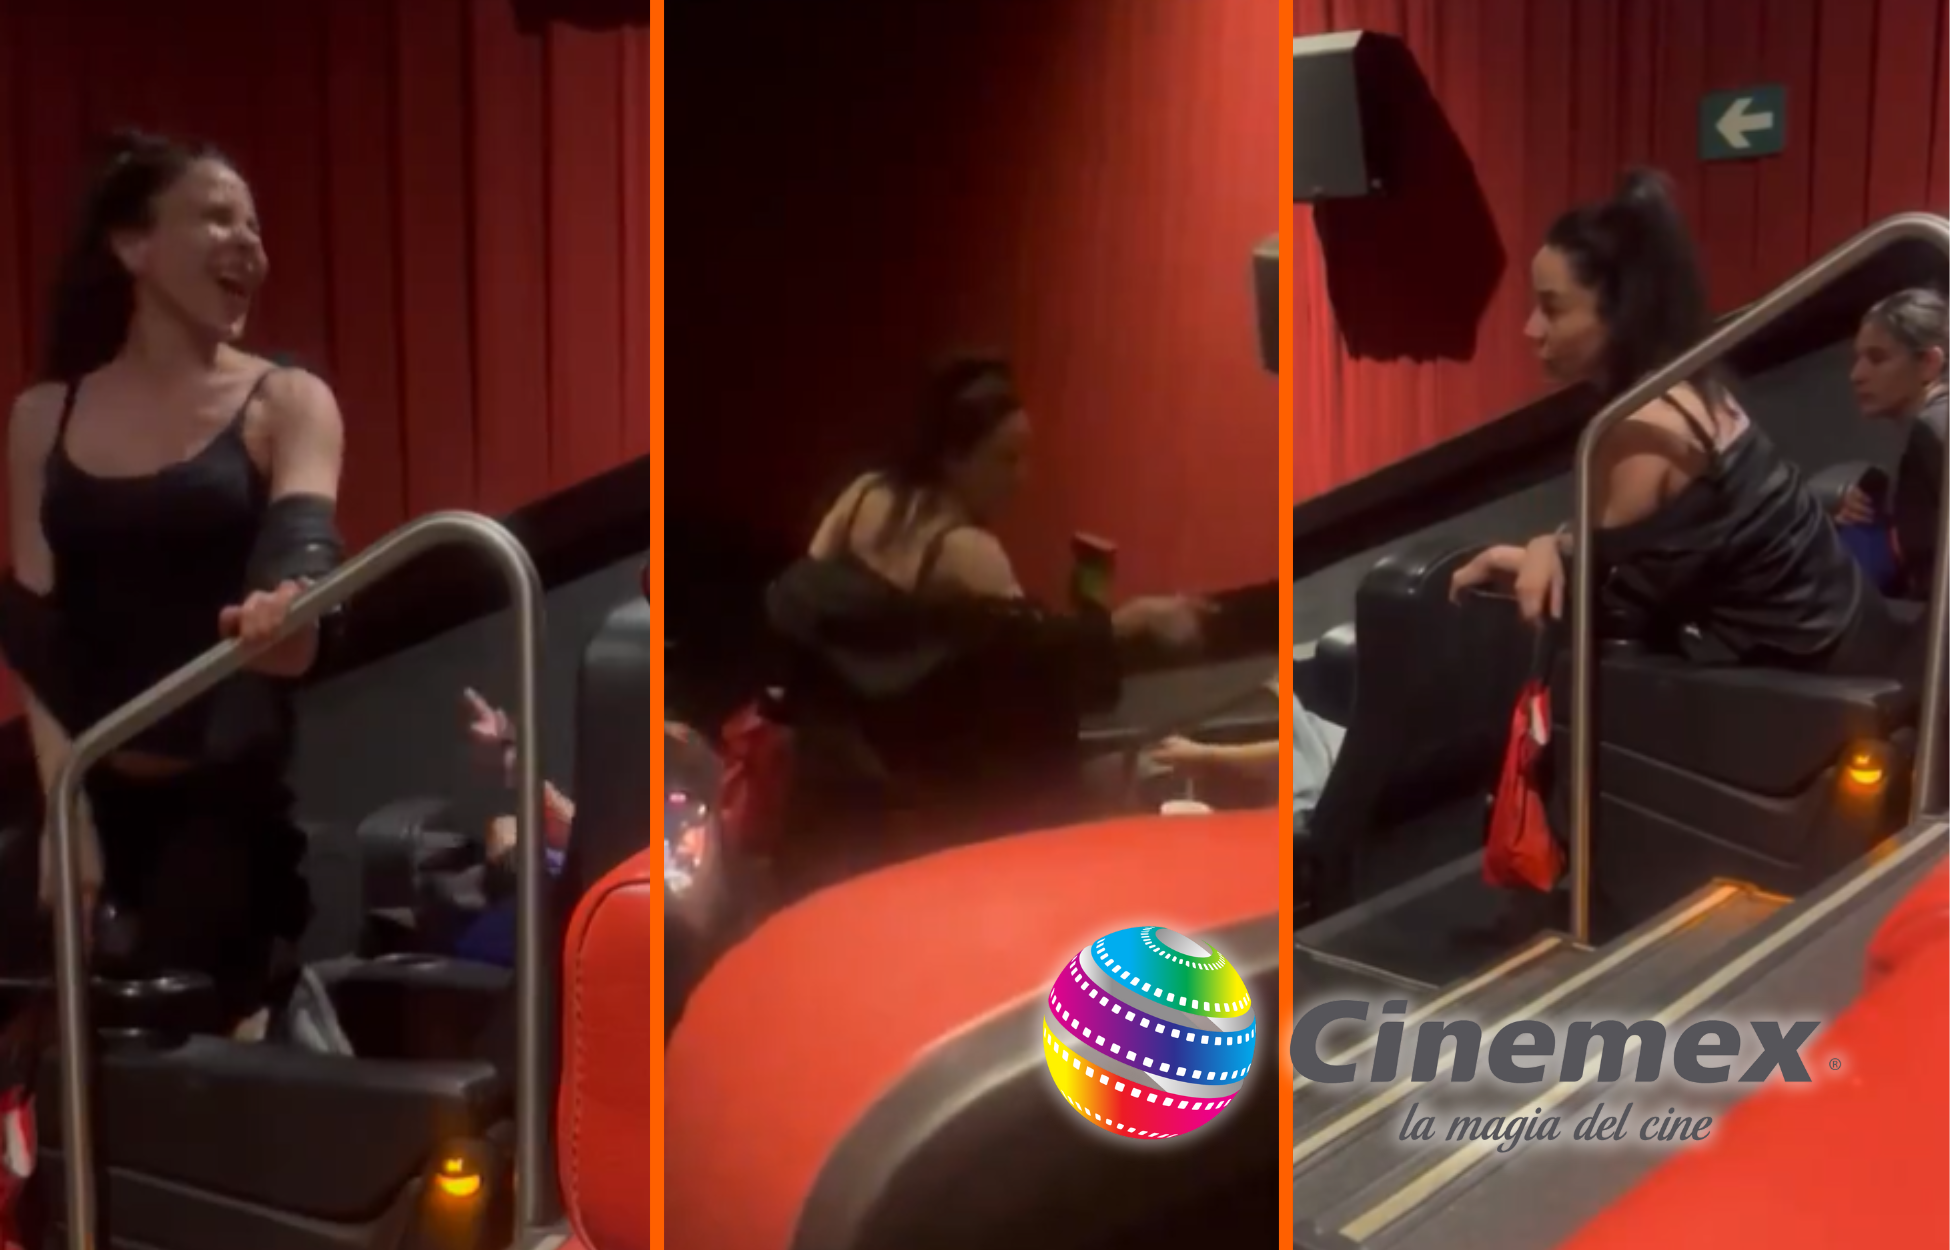 Surge ‘Lady Cinemex’: Mujer lanza insultos homofóbicos y xenofóbicos, y ataca a asistentes durante función de cine, ‘Sí, no respeto a nadie’ (video). Noticias en tiempo real